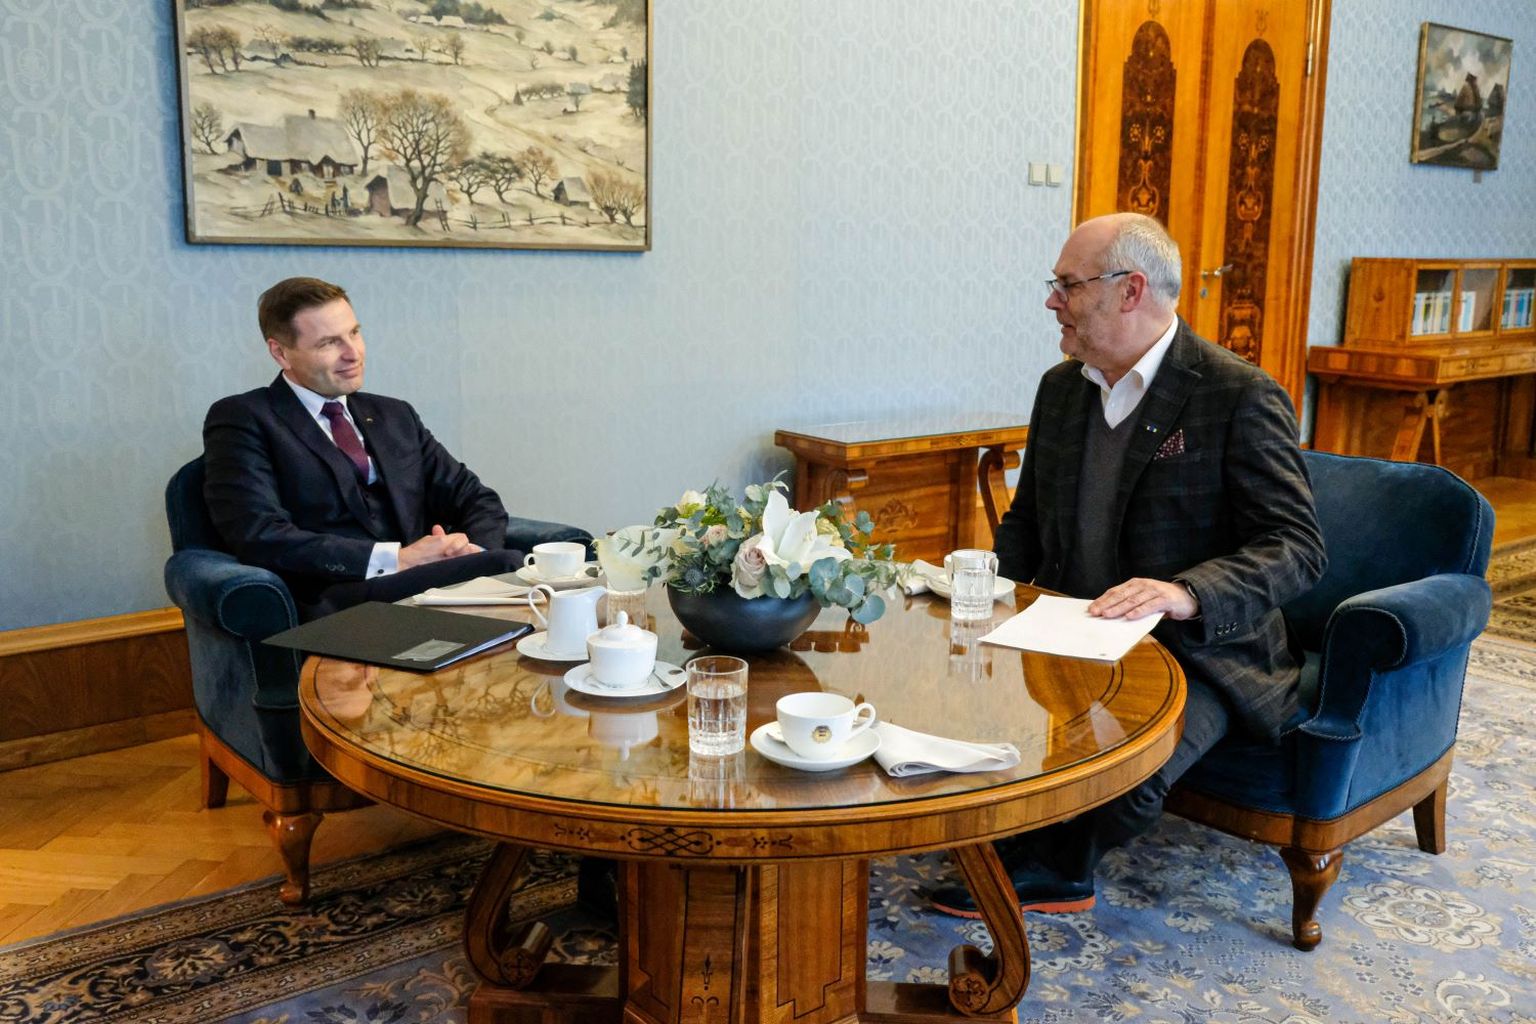 Президент Алар Карис на состоявшейся в понедельник встрече с министром обороны Ханно Певкуром.